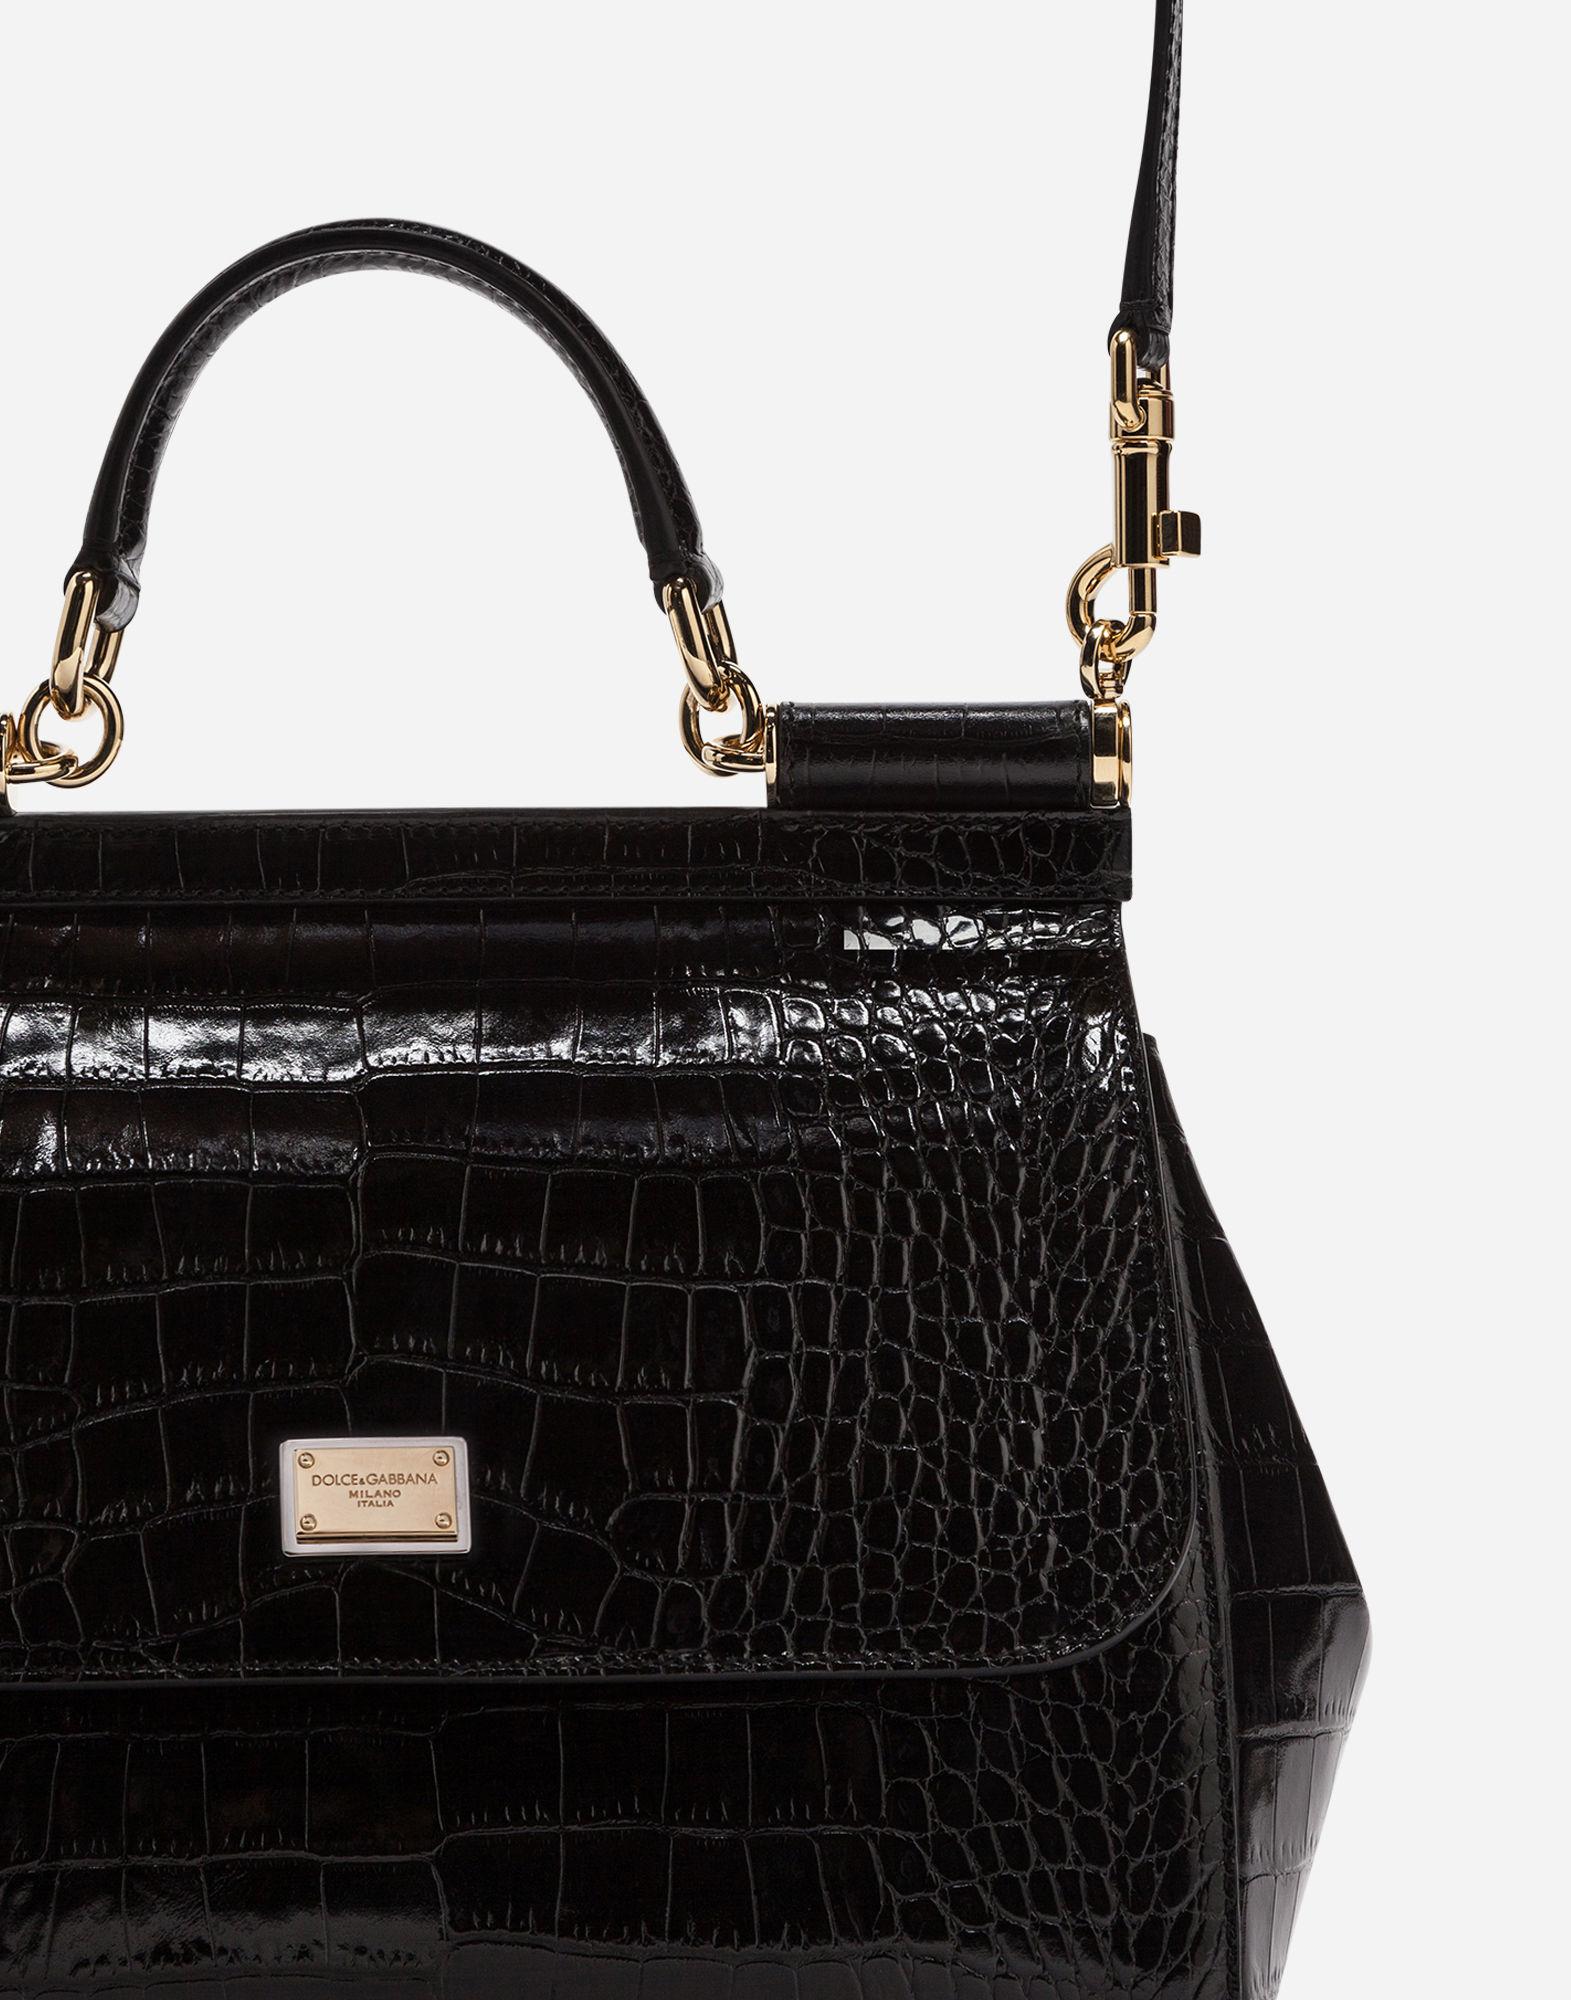 Dolce & Gabbana Sicily Bag In Crocodile in Black